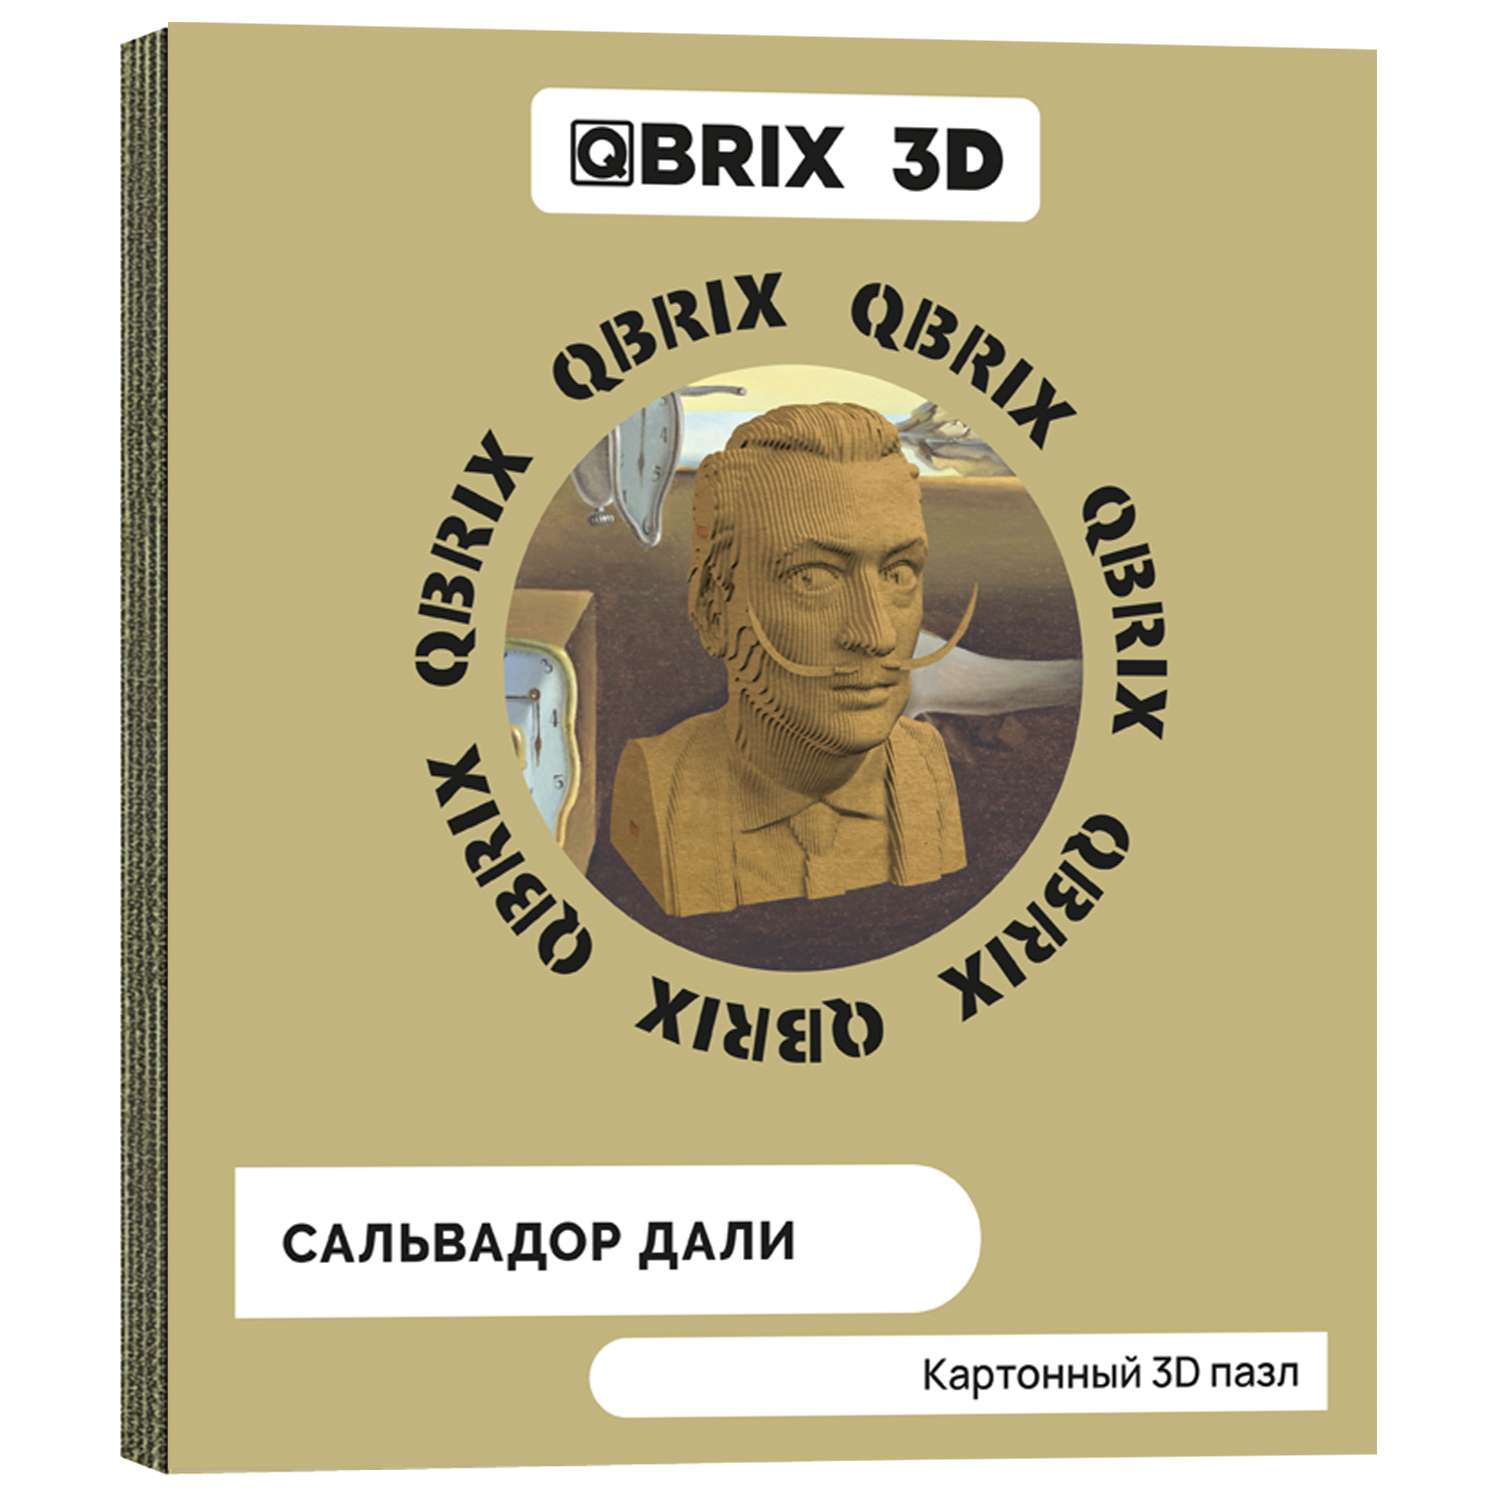 Конструктор QBRIX 3D картонный Сальвадор Дали 20025 20025 - фото 1